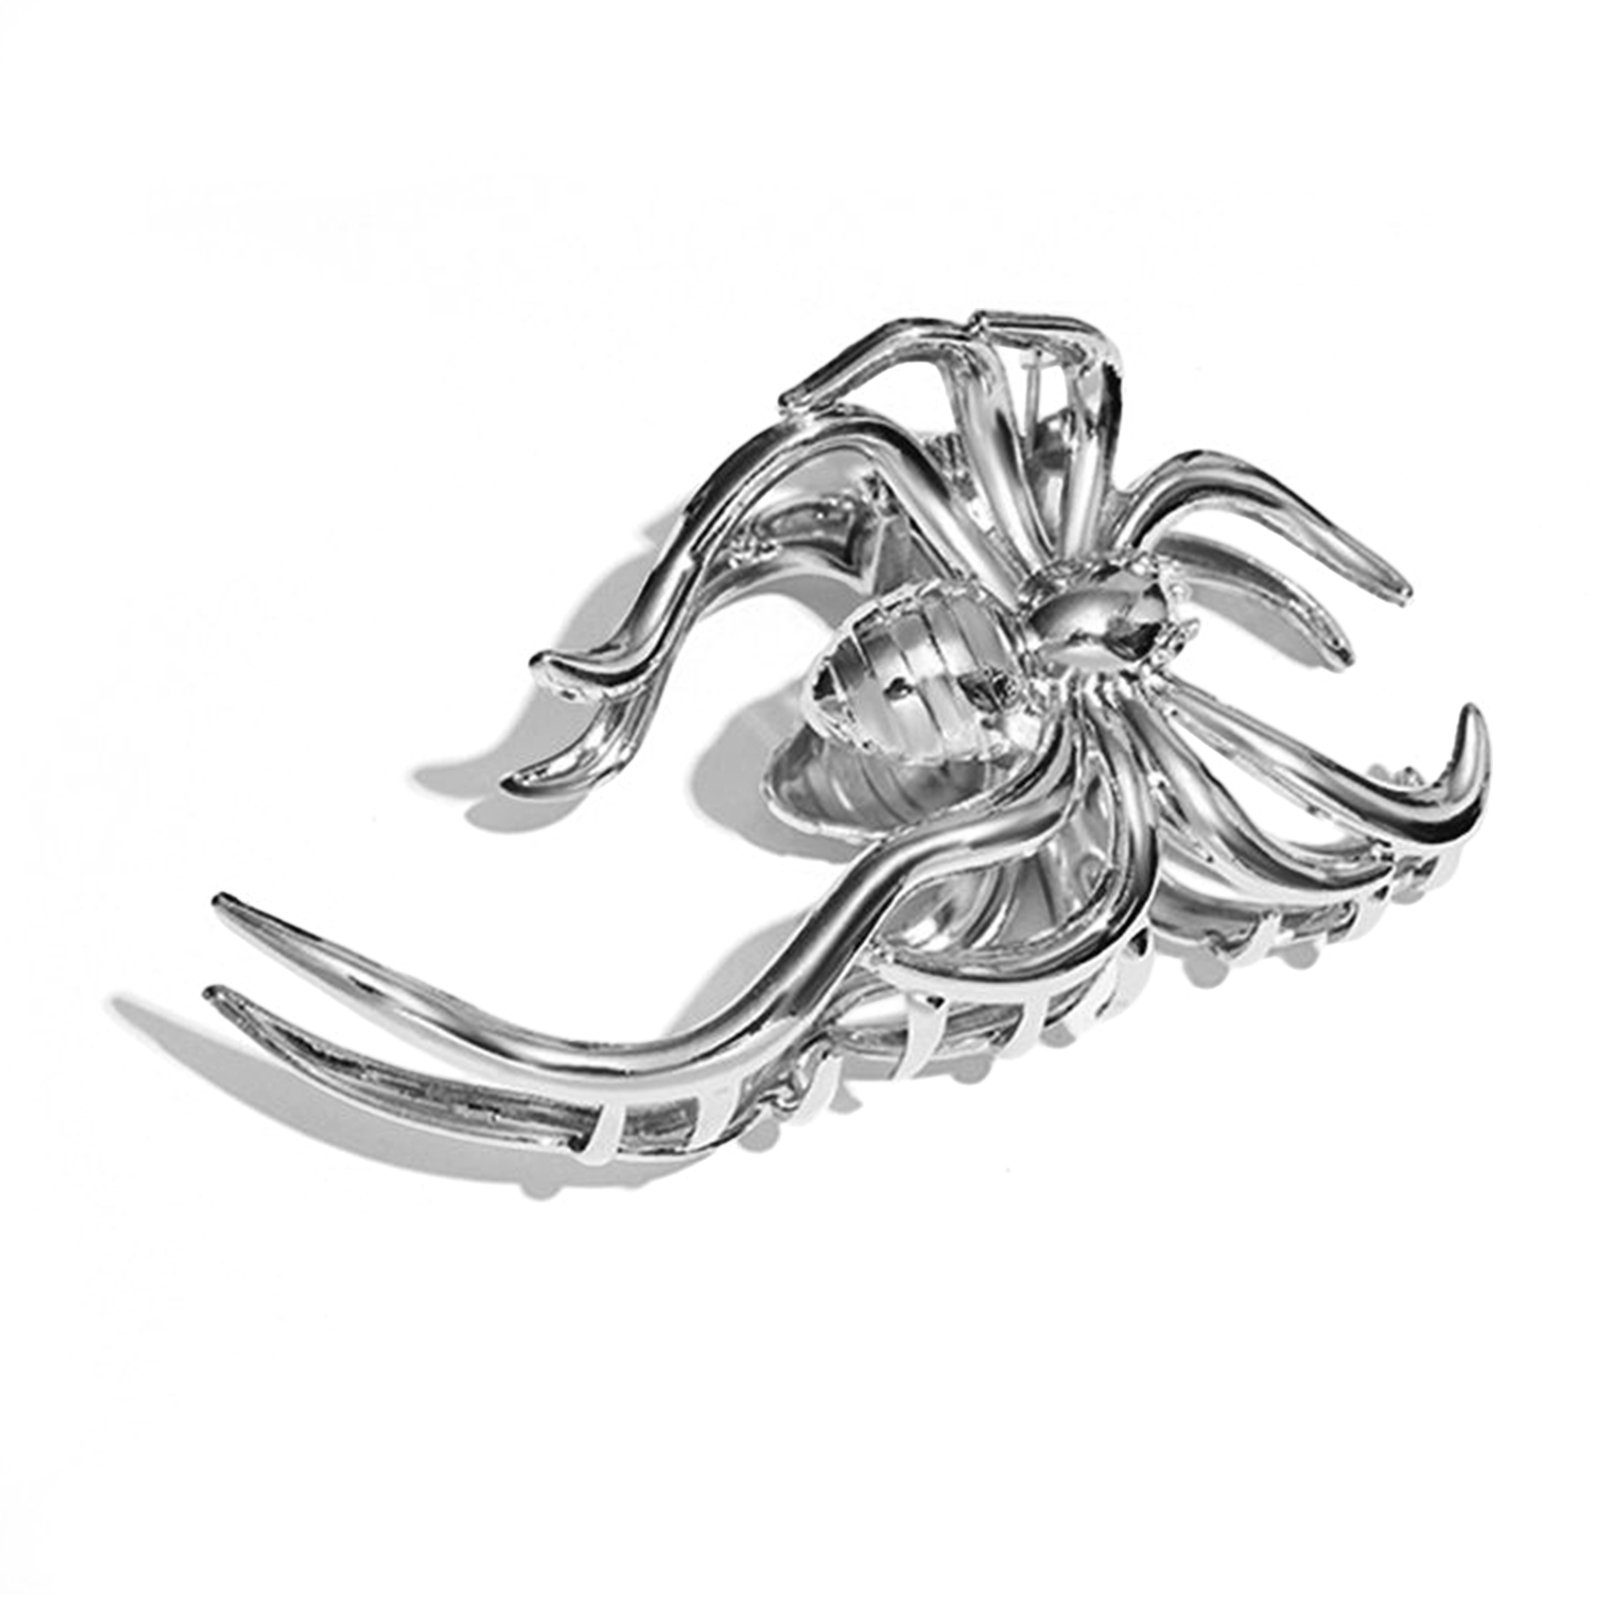 Blusmart Diadem Große Spinnen-Haarspange, Stilvolle Tragbare Silber